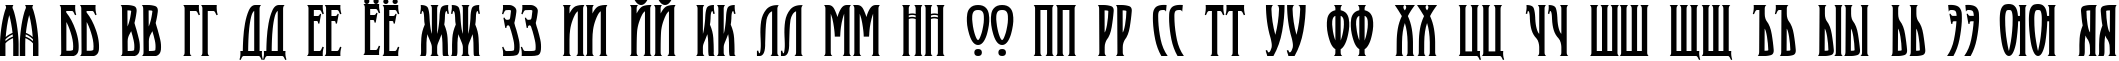 Пример написания русского алфавита шрифтом Proletariat